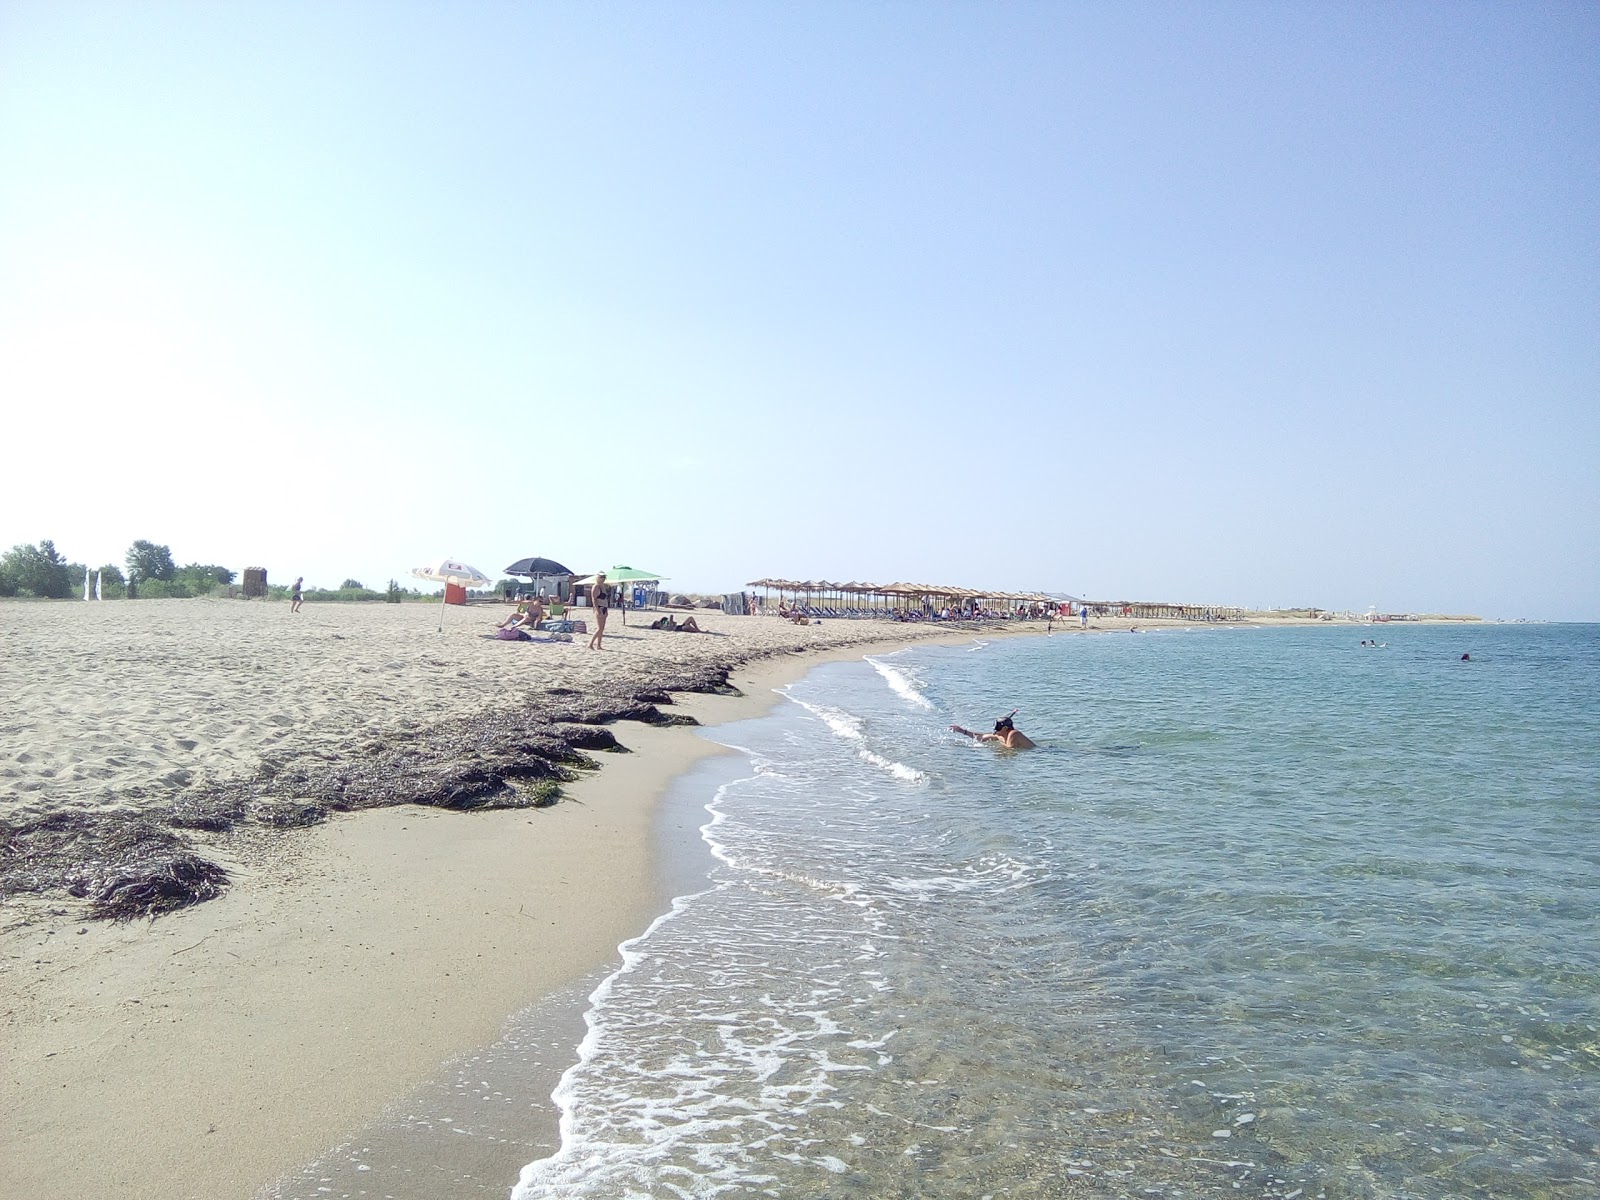 Fotografie cu Nea Iraklia beach cu o suprafață de apa pură turcoaz